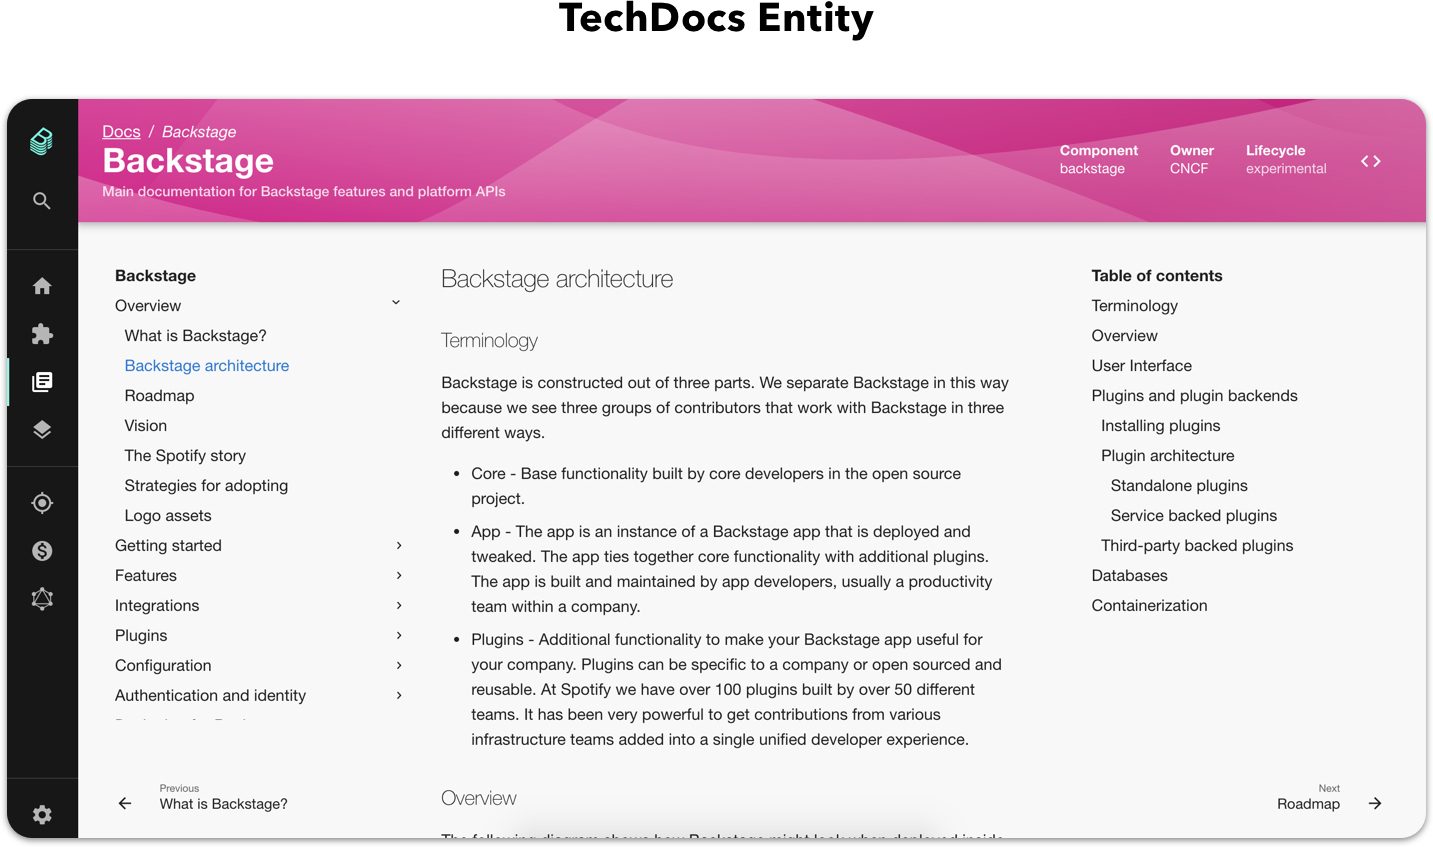 TechDocs entitiy